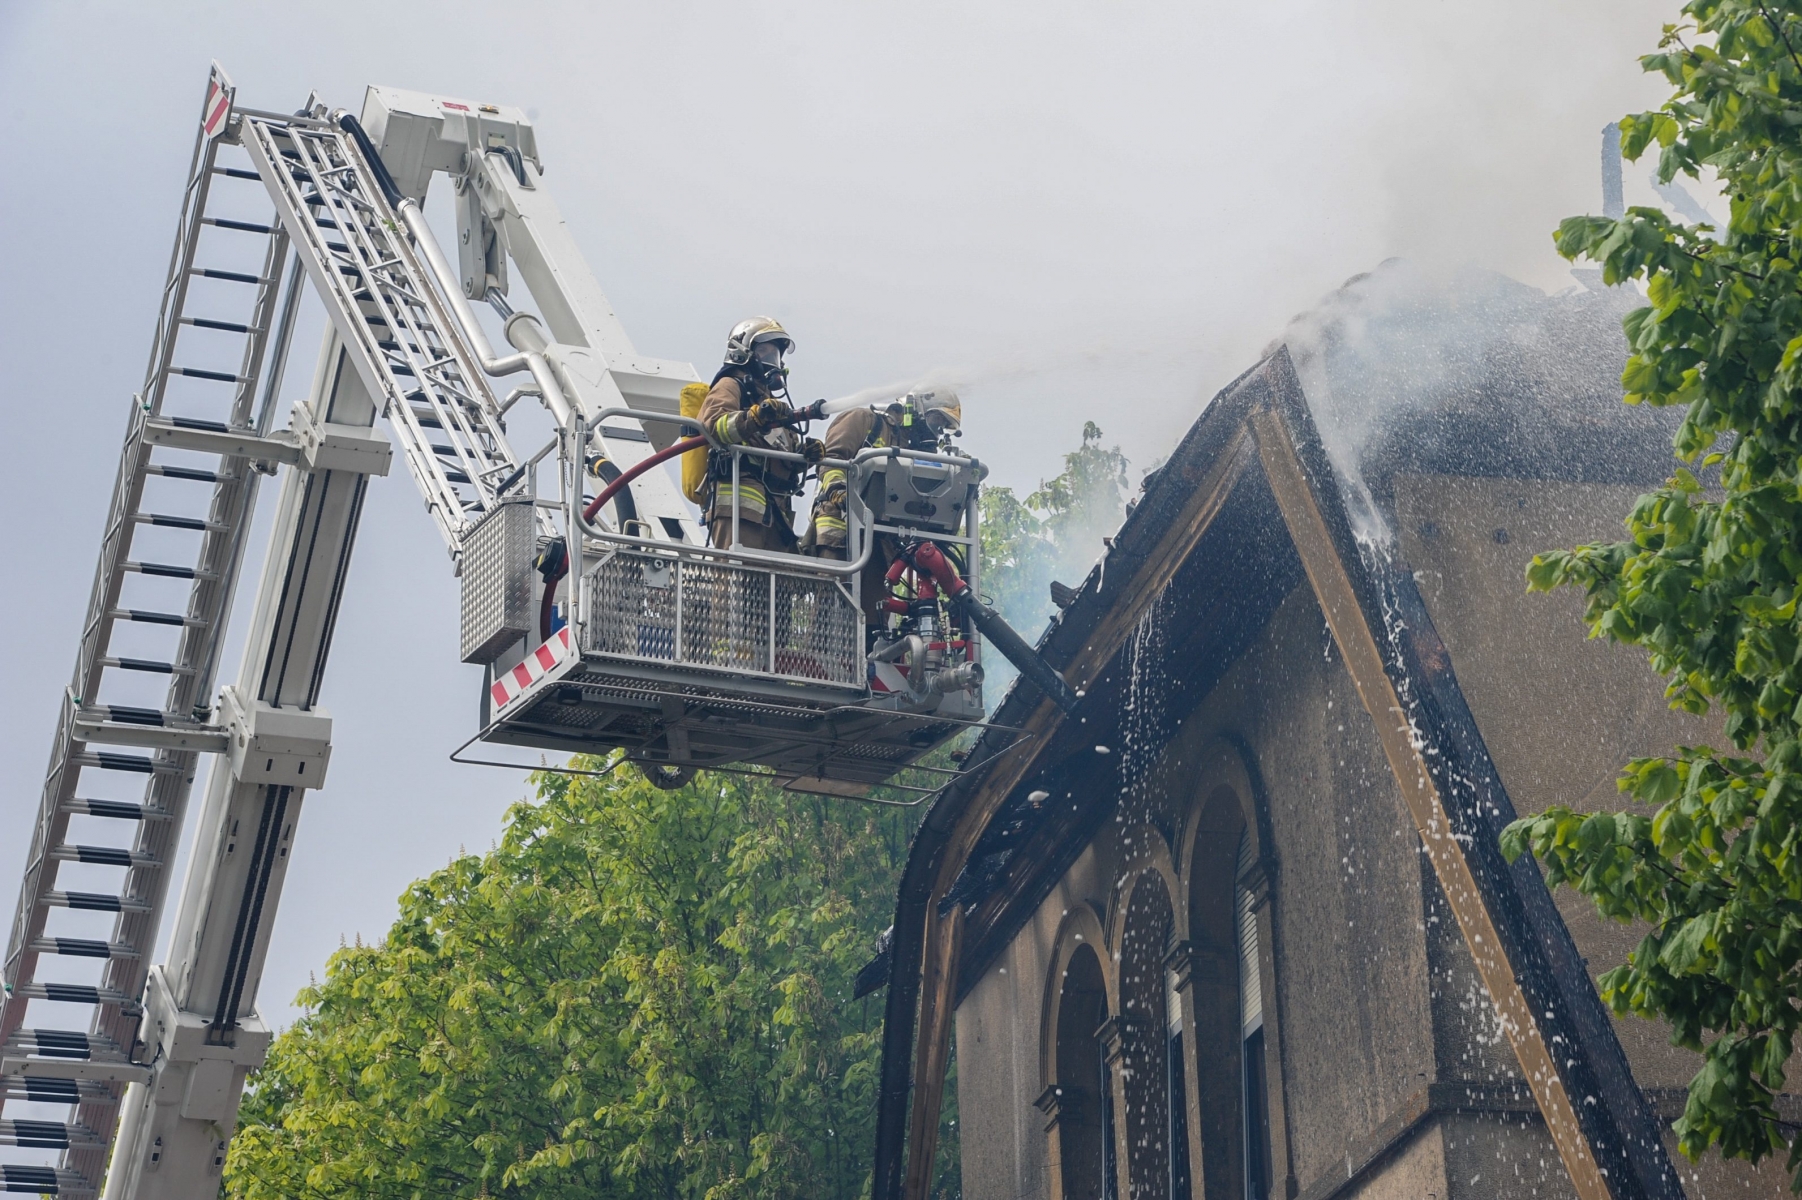 Incendie dans les combles du chateau de Trois-Rods    BOUDRY  18 04 2014  PHOTO: CHRISTIAN GALLEY